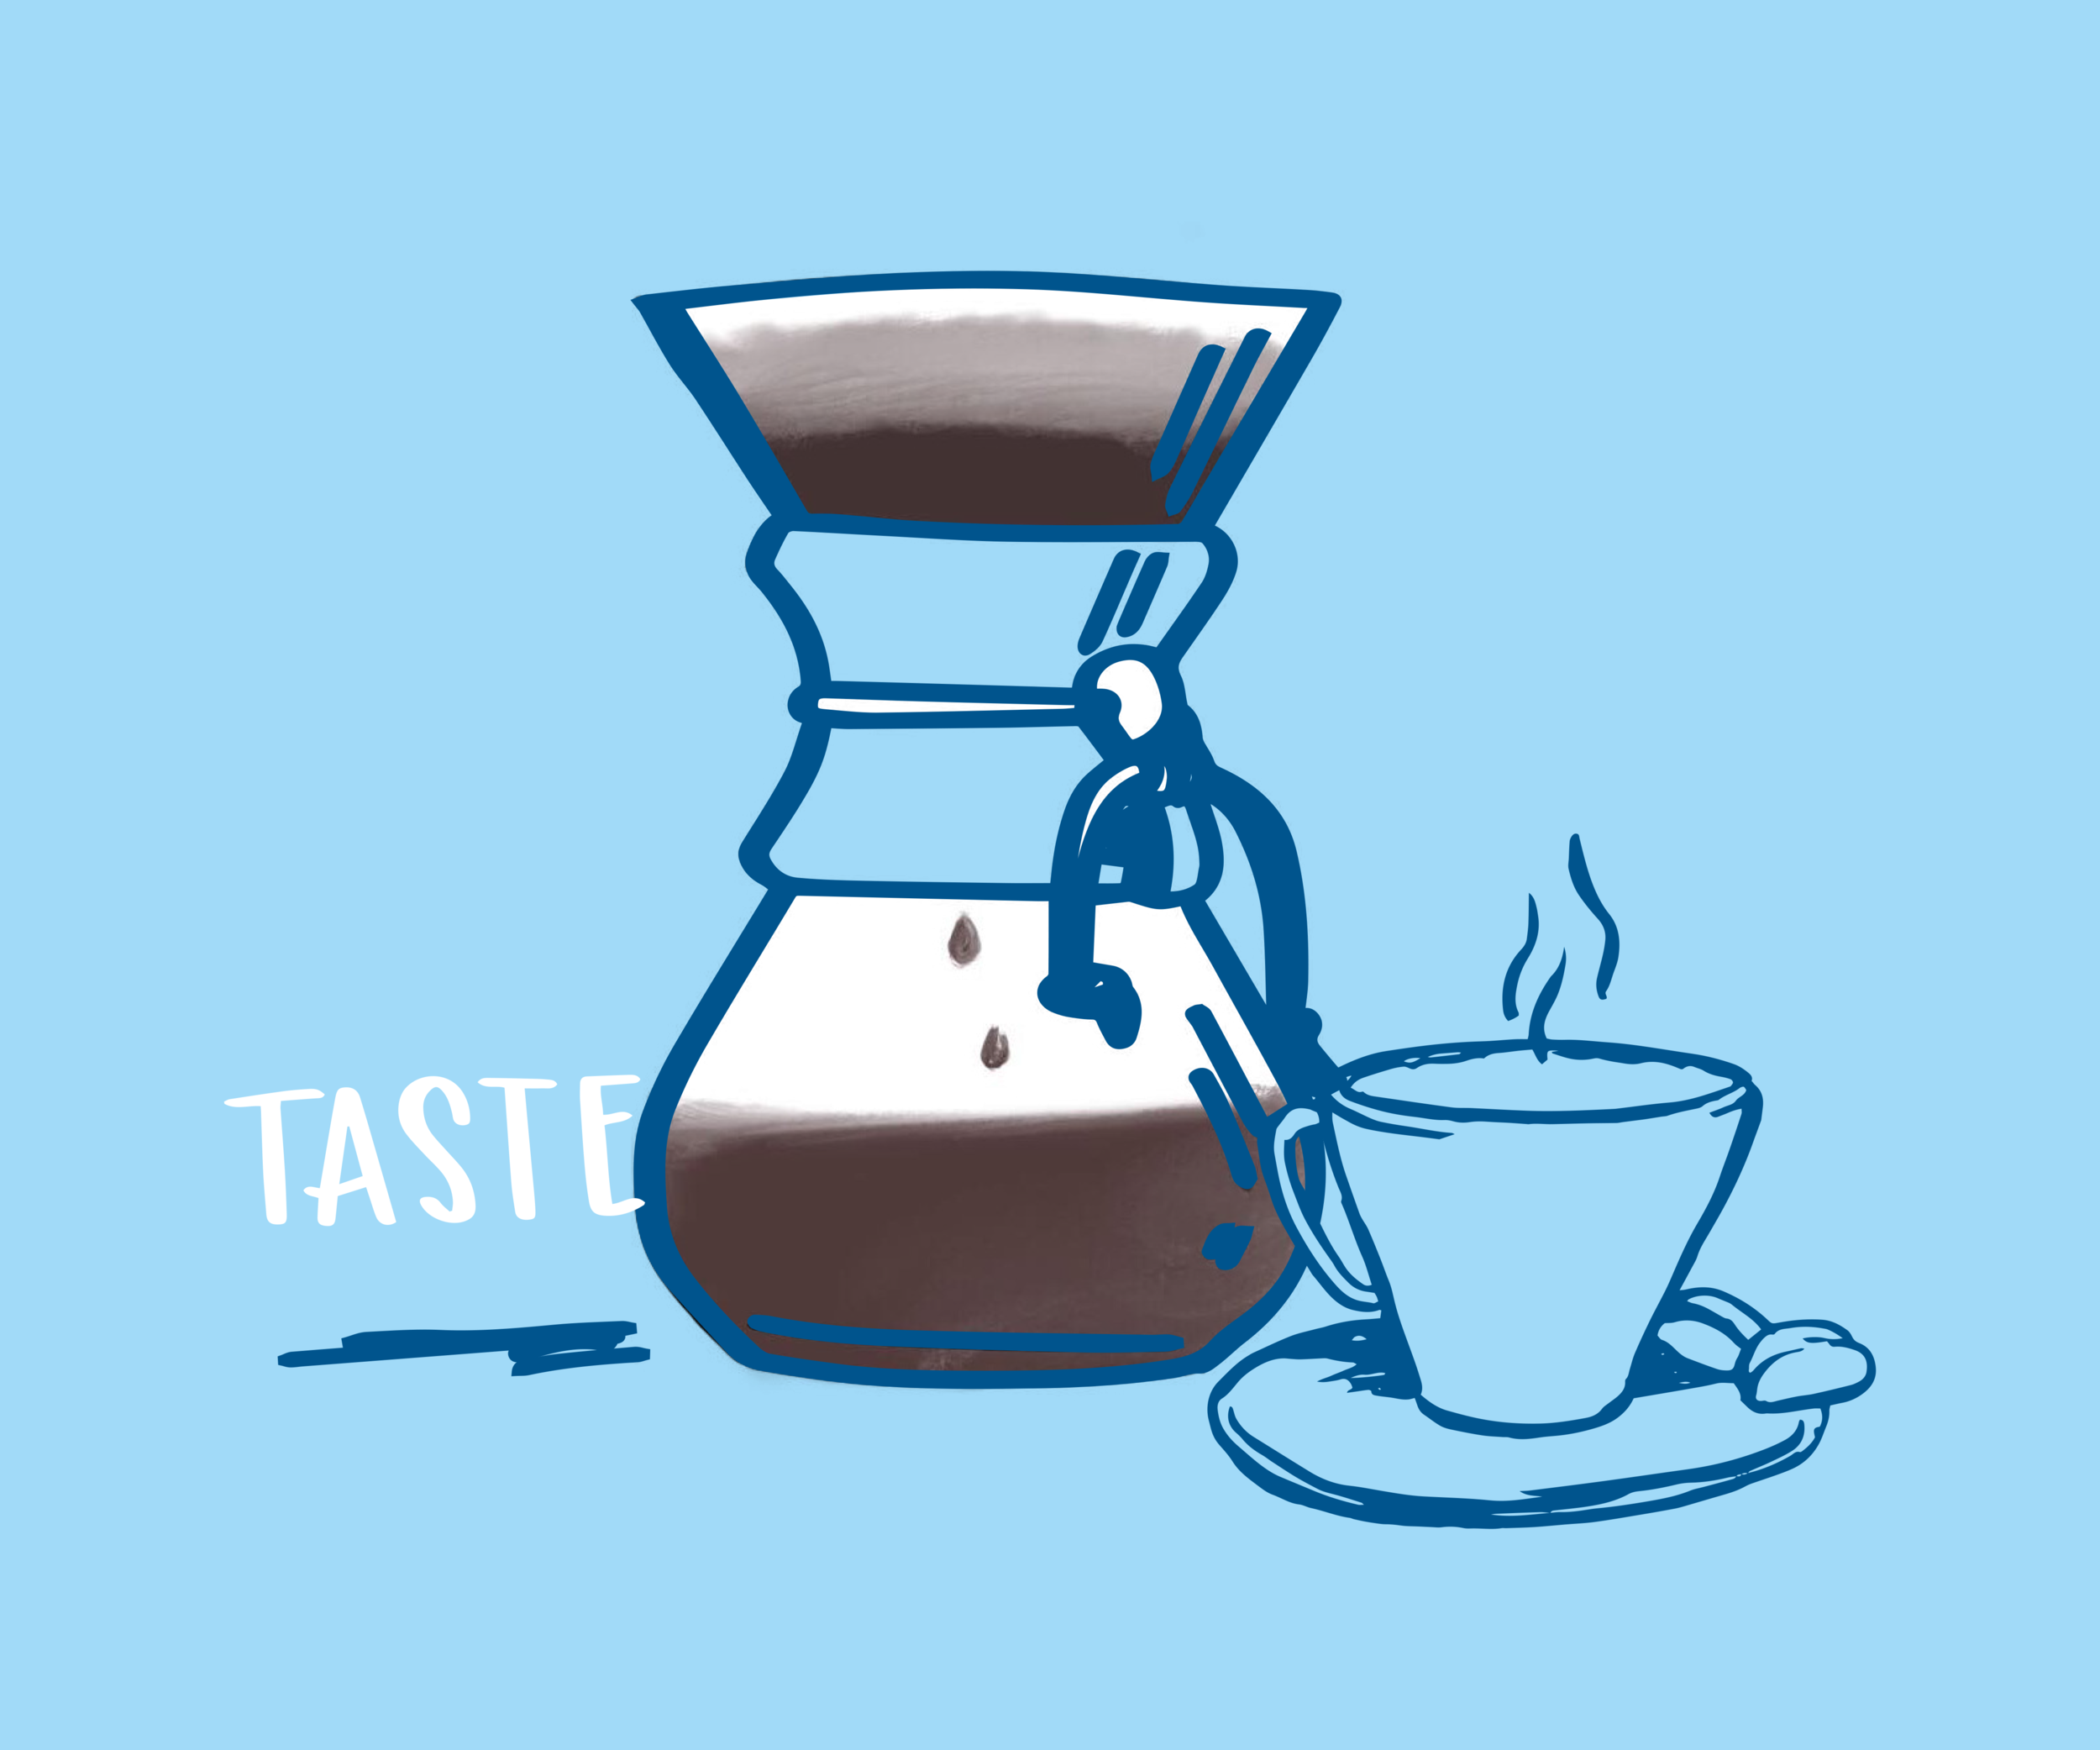 Taste like water. Спешелти кофе рисунок. Кофейня ассоциации. Спешиалти кофе обои.